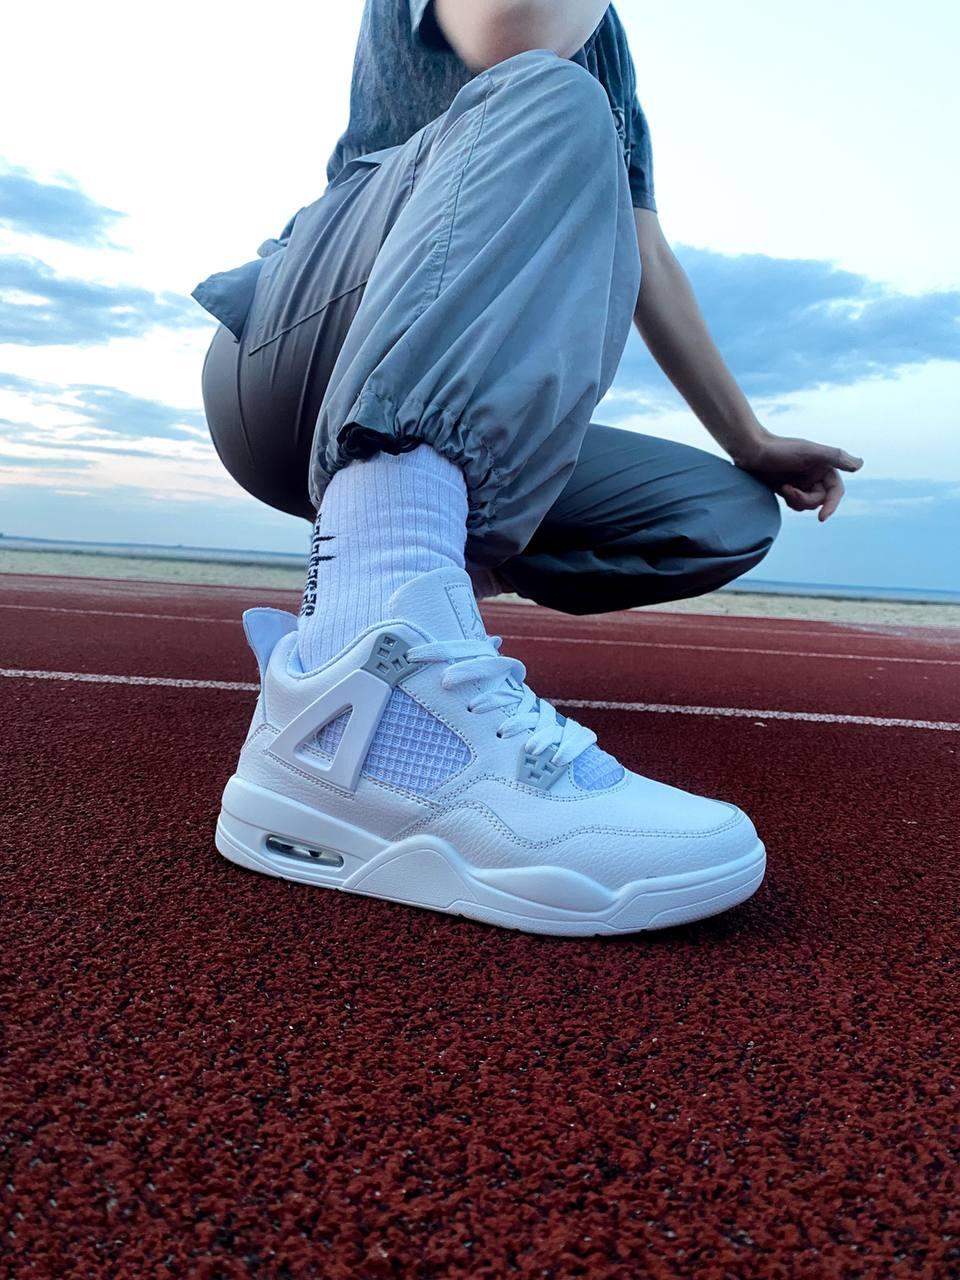 Жіночі стильні кросівки білі Nike Air Jordan Retro 4 White Cement, найк айр джердан ретро